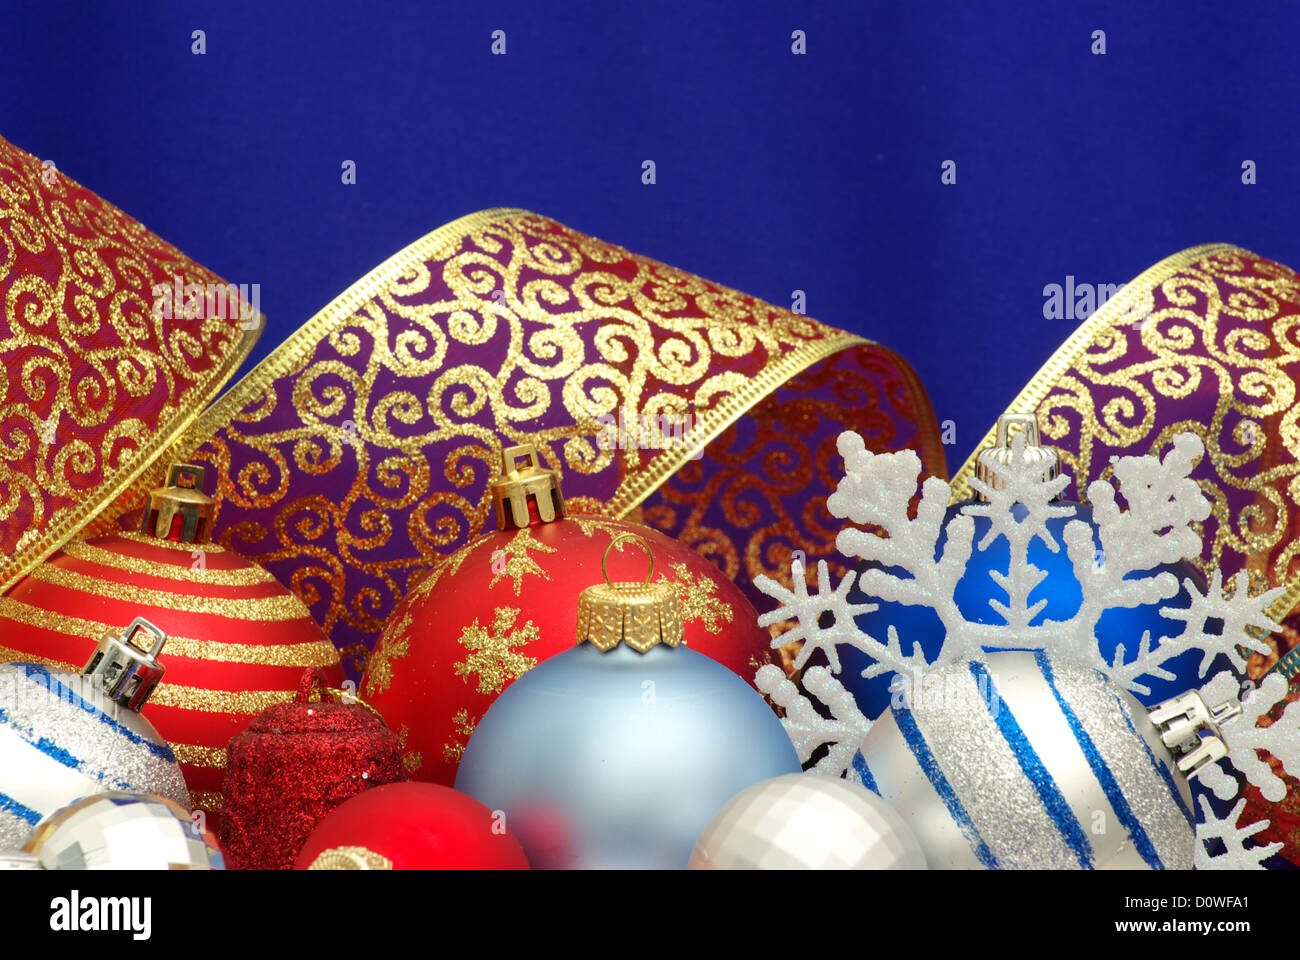 Christmas Decoration isolated on blue background Stock Photo